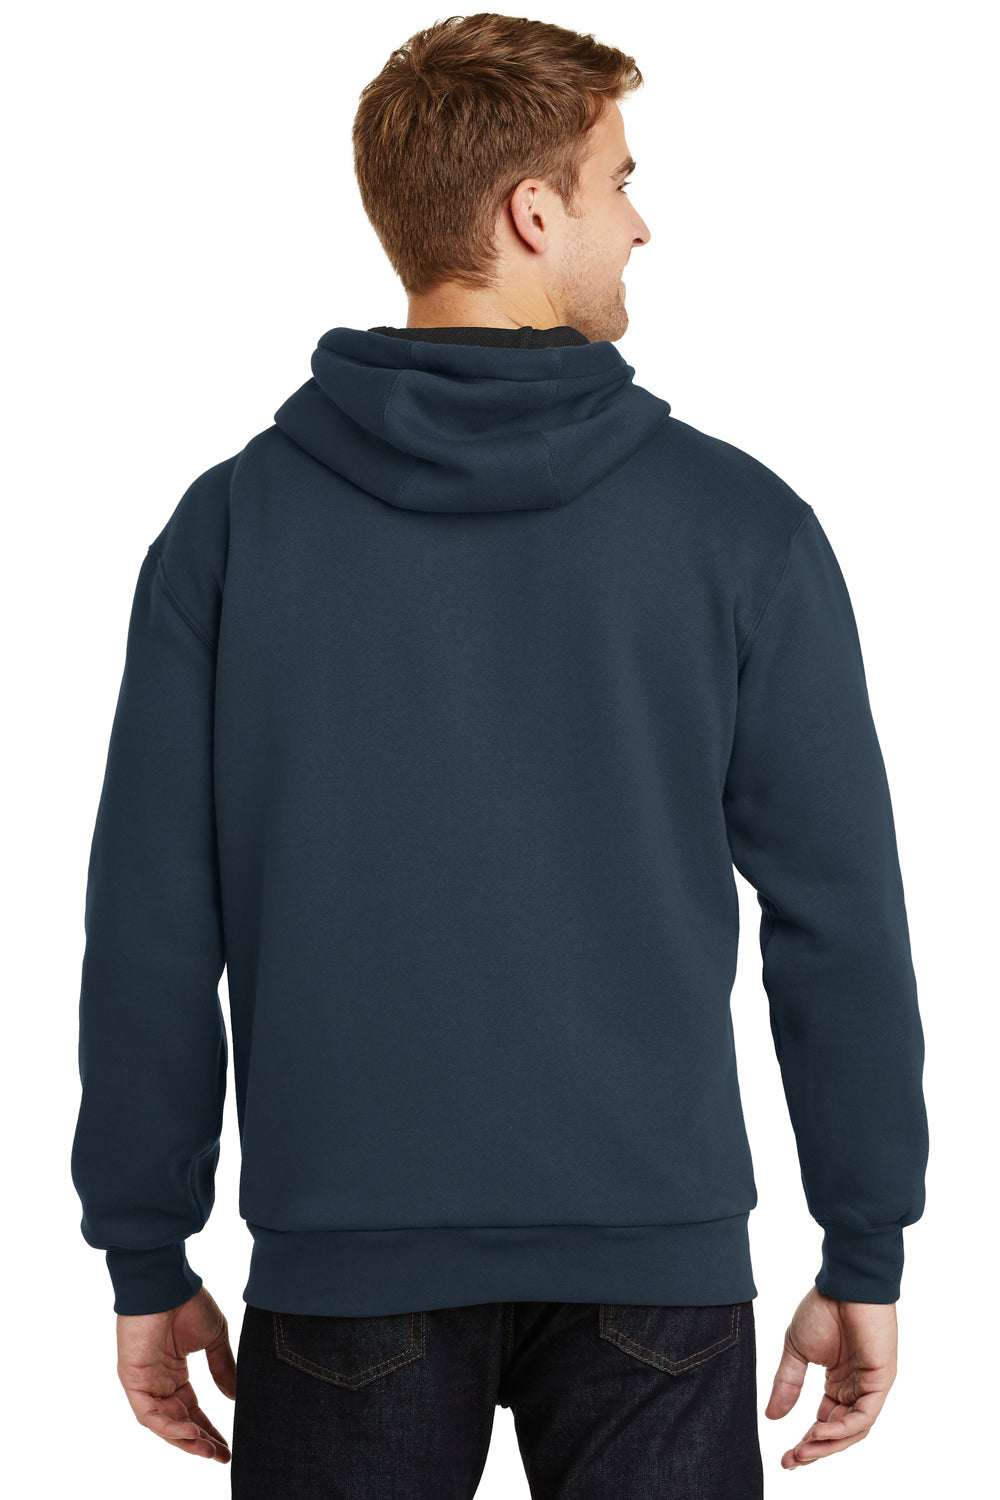 CornerStone CS620 Mens Full Zip Hooded Sweatshirt Hoodie Navy Blue Back